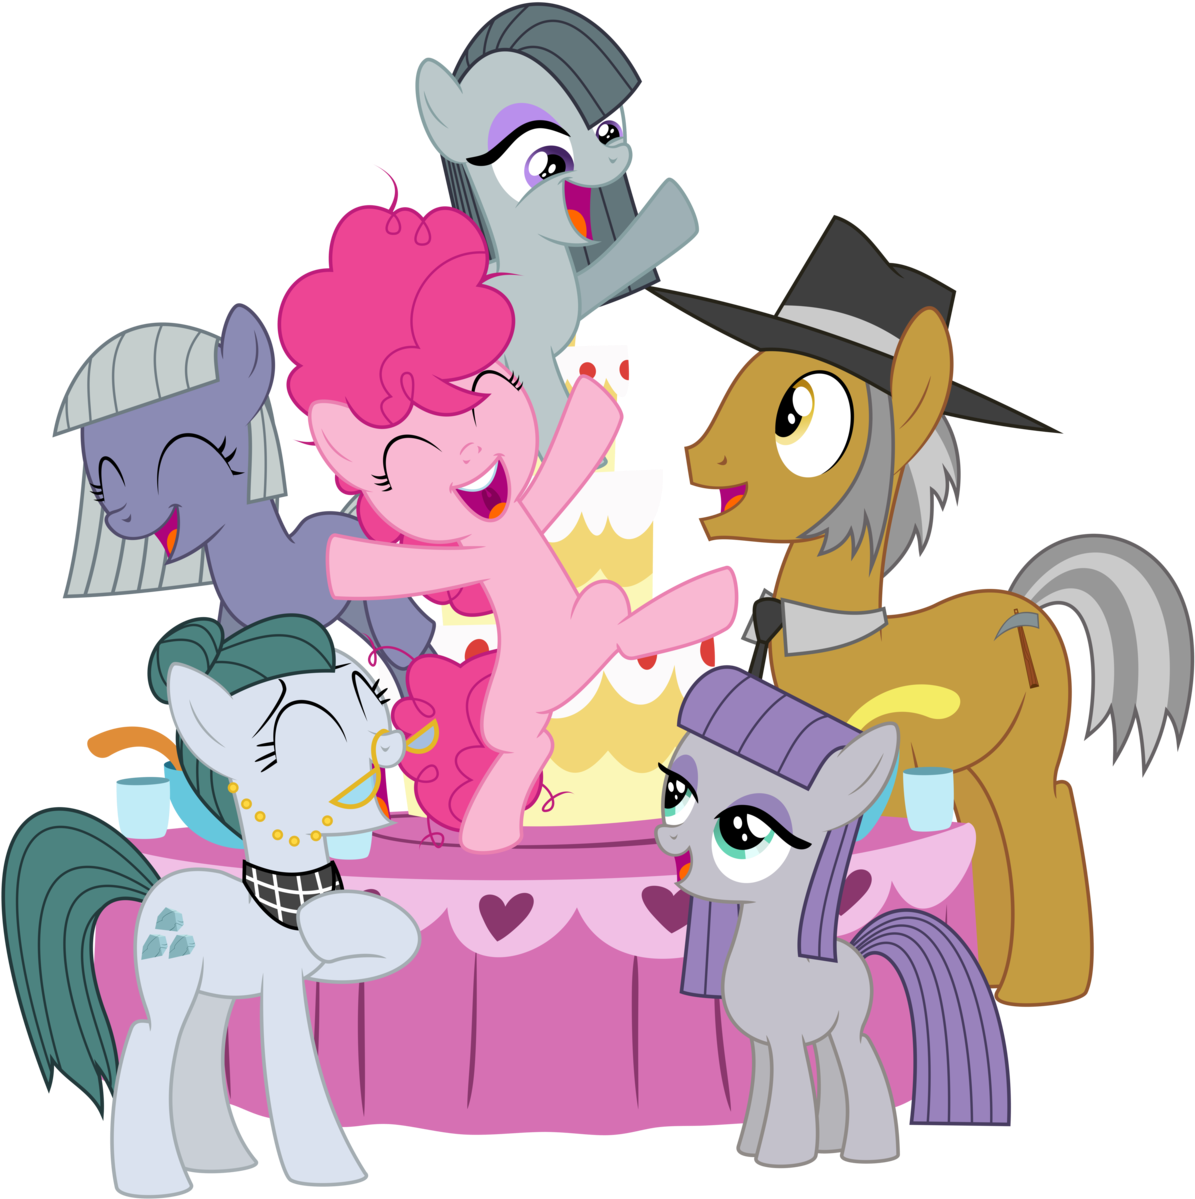 Pie Family Portrait By Masemj - My Little Pony Pinkie Pie's Family (1280x1244)